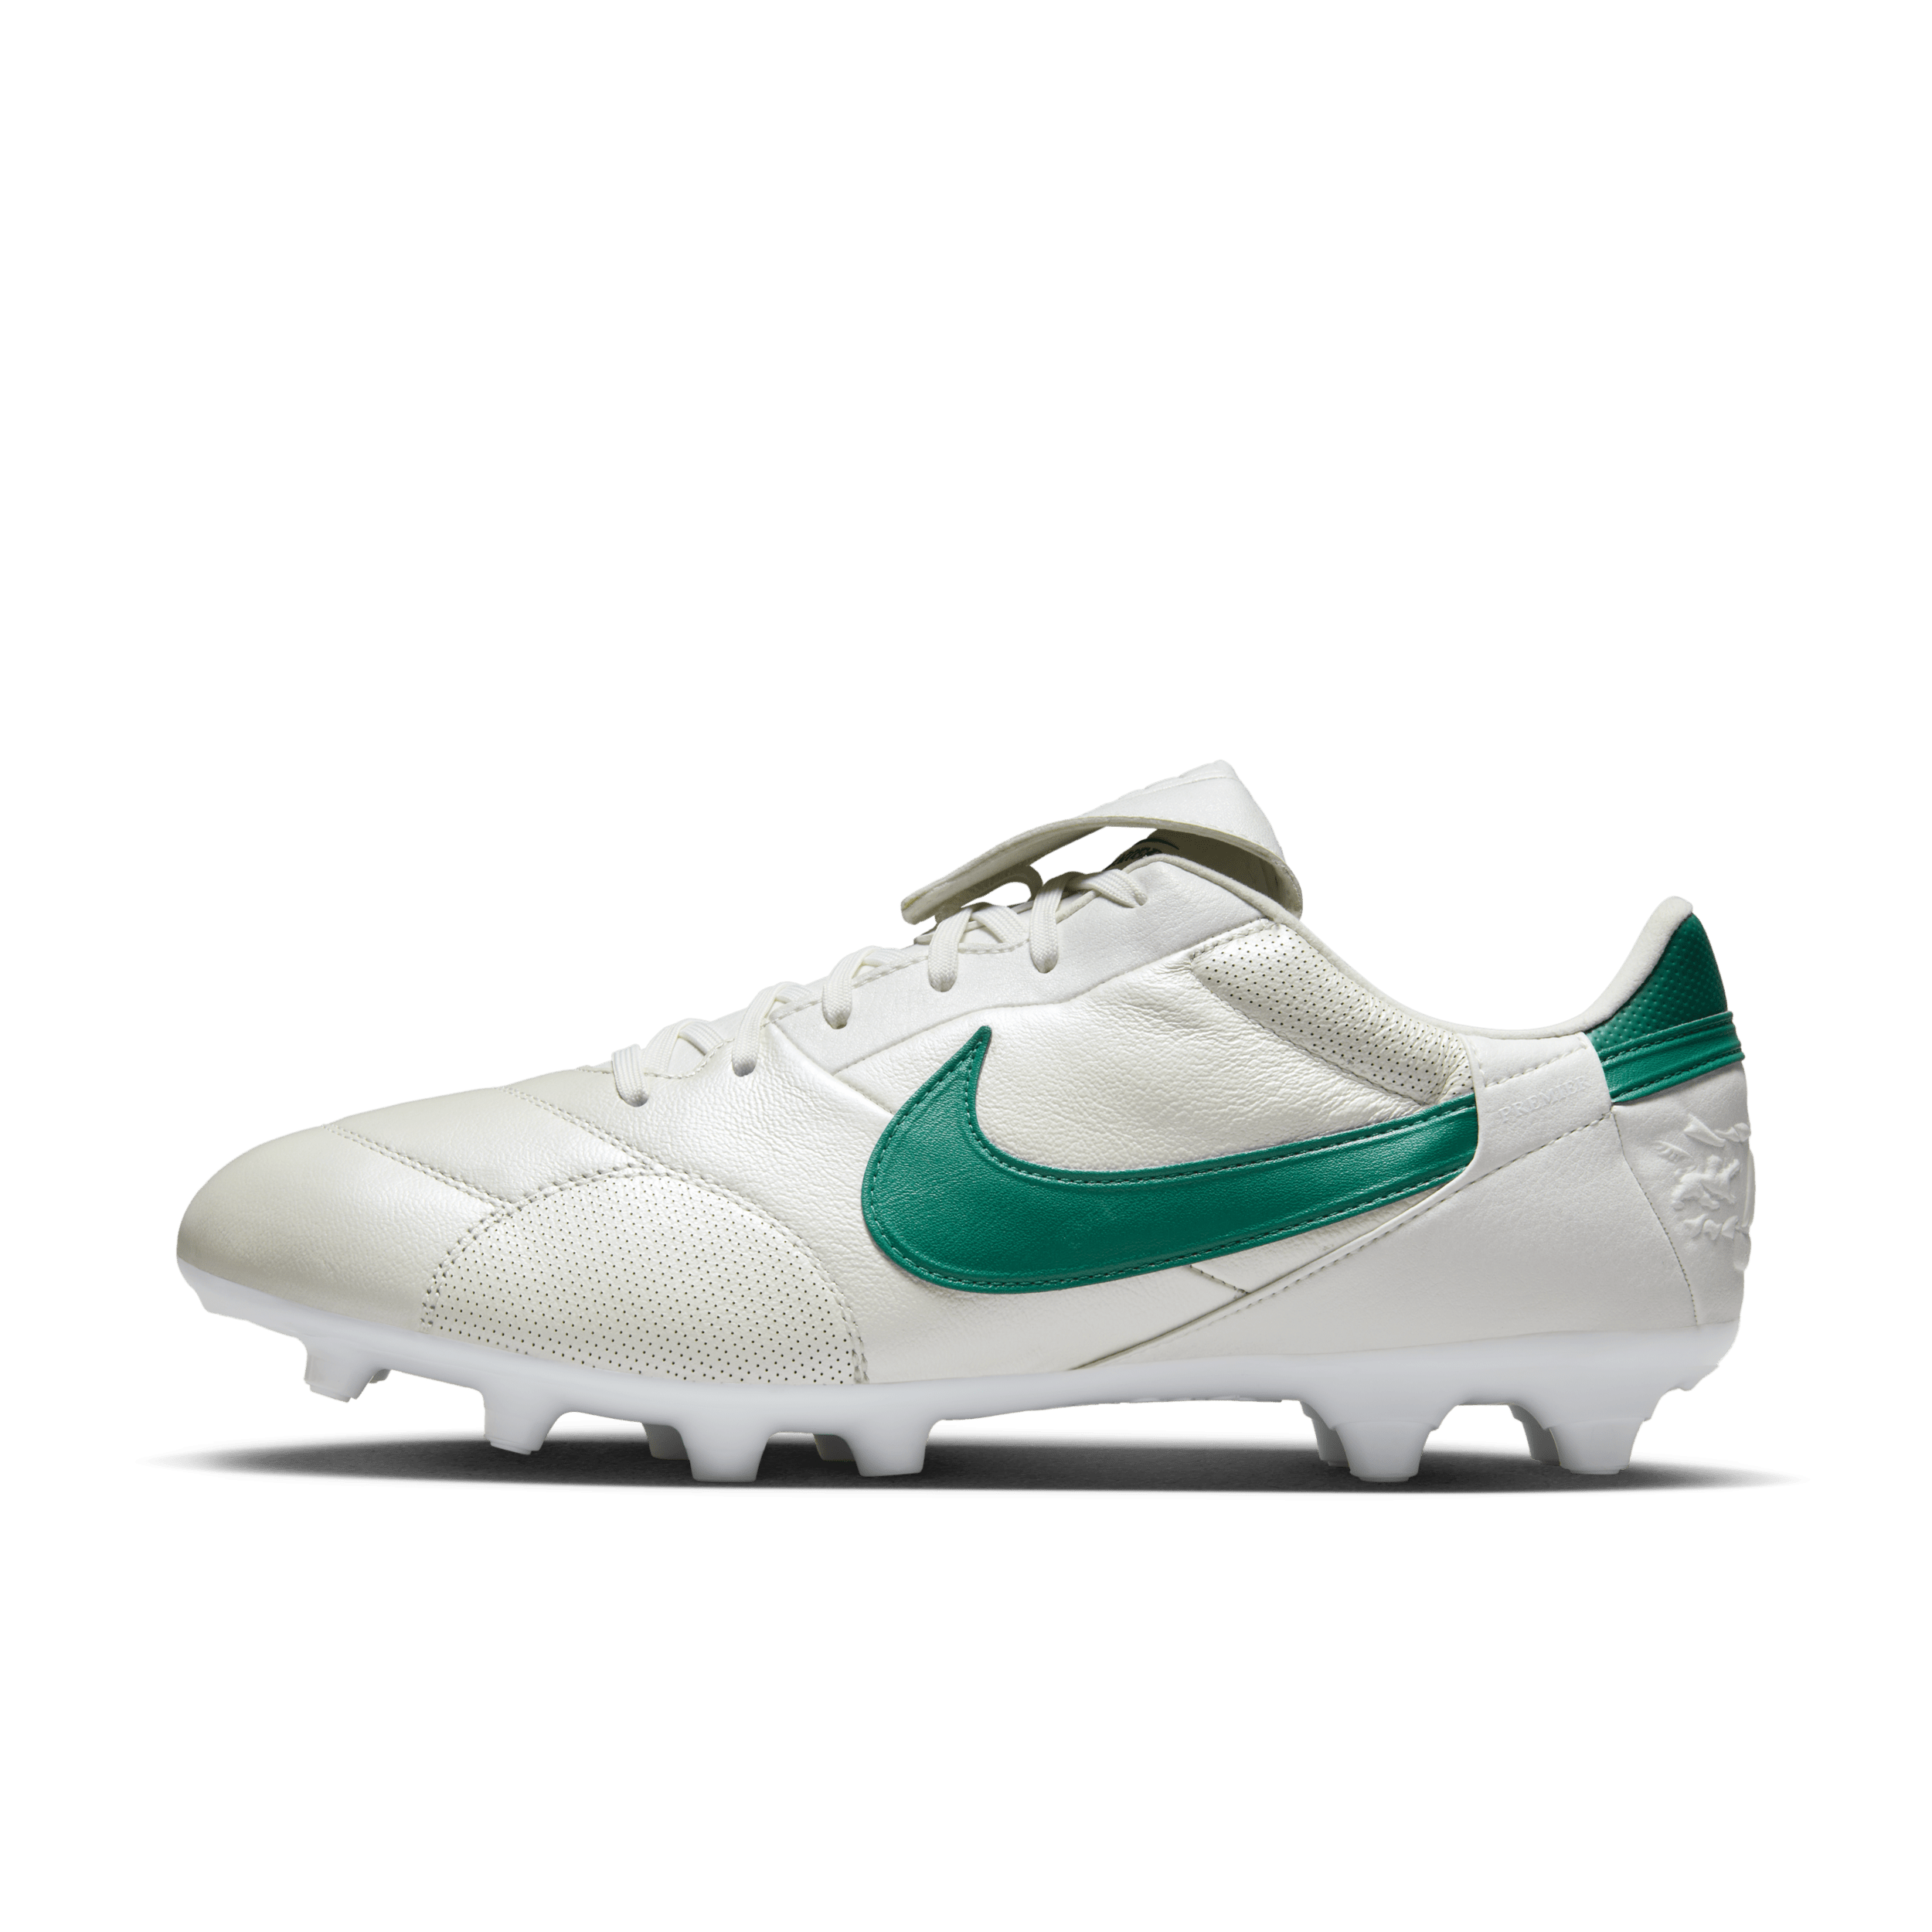 NikePremier 3 Botas de fútbol de perfil bajo para terreno firme - Blanco